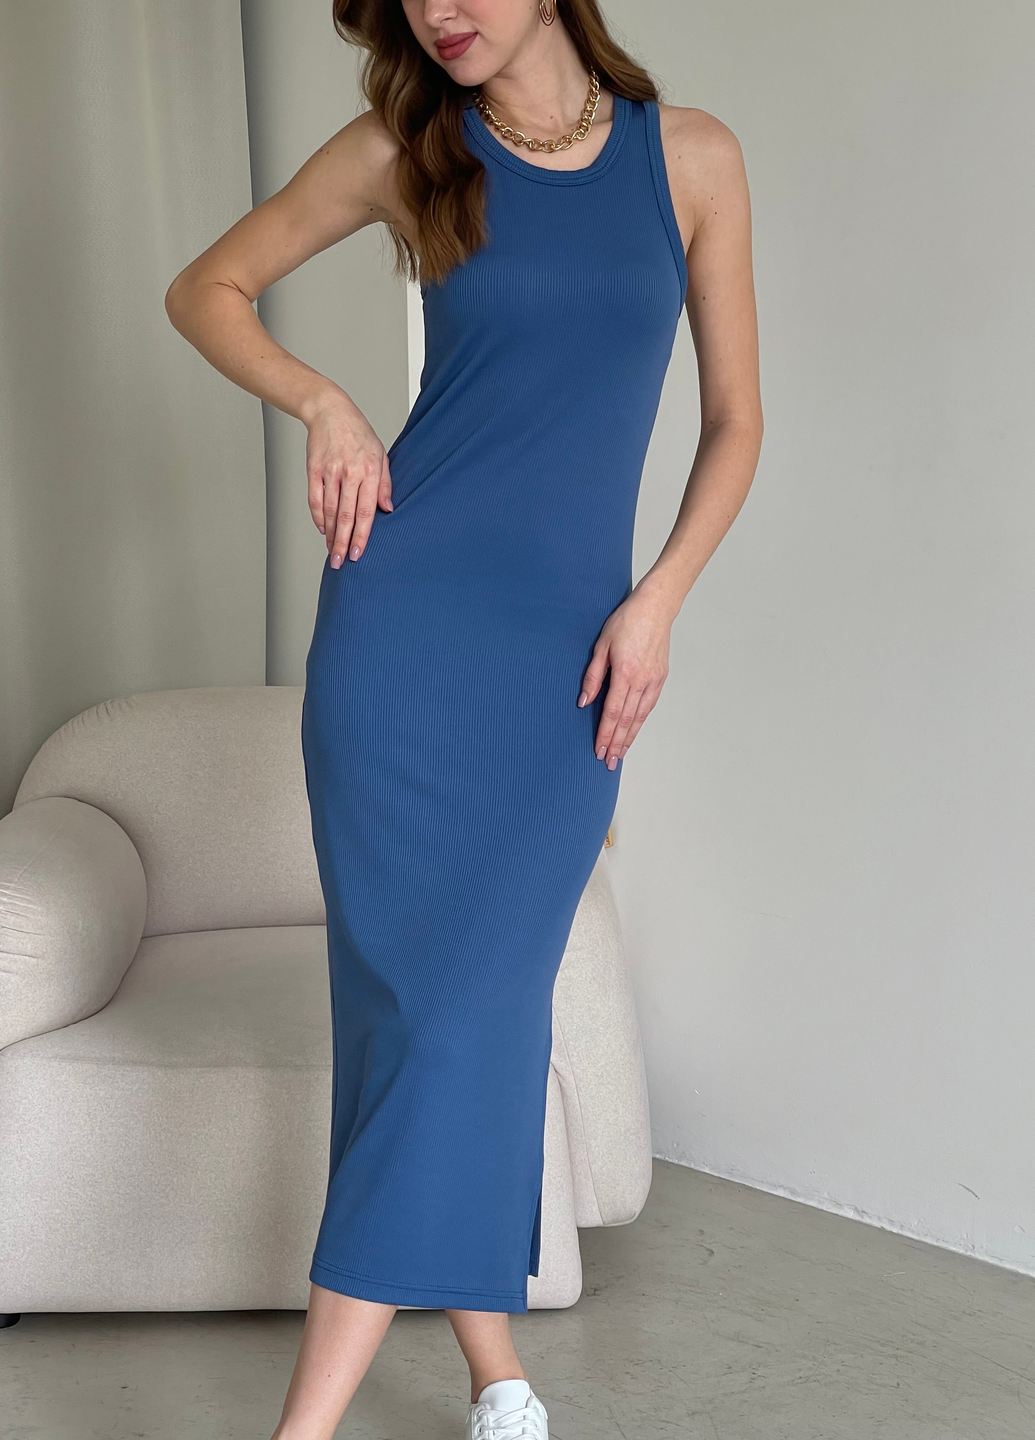 Купить Длинное платье-майка в рубчик синее Merlini Лонга 700000111 размер 42-44 (S-M) в интернет-магазине